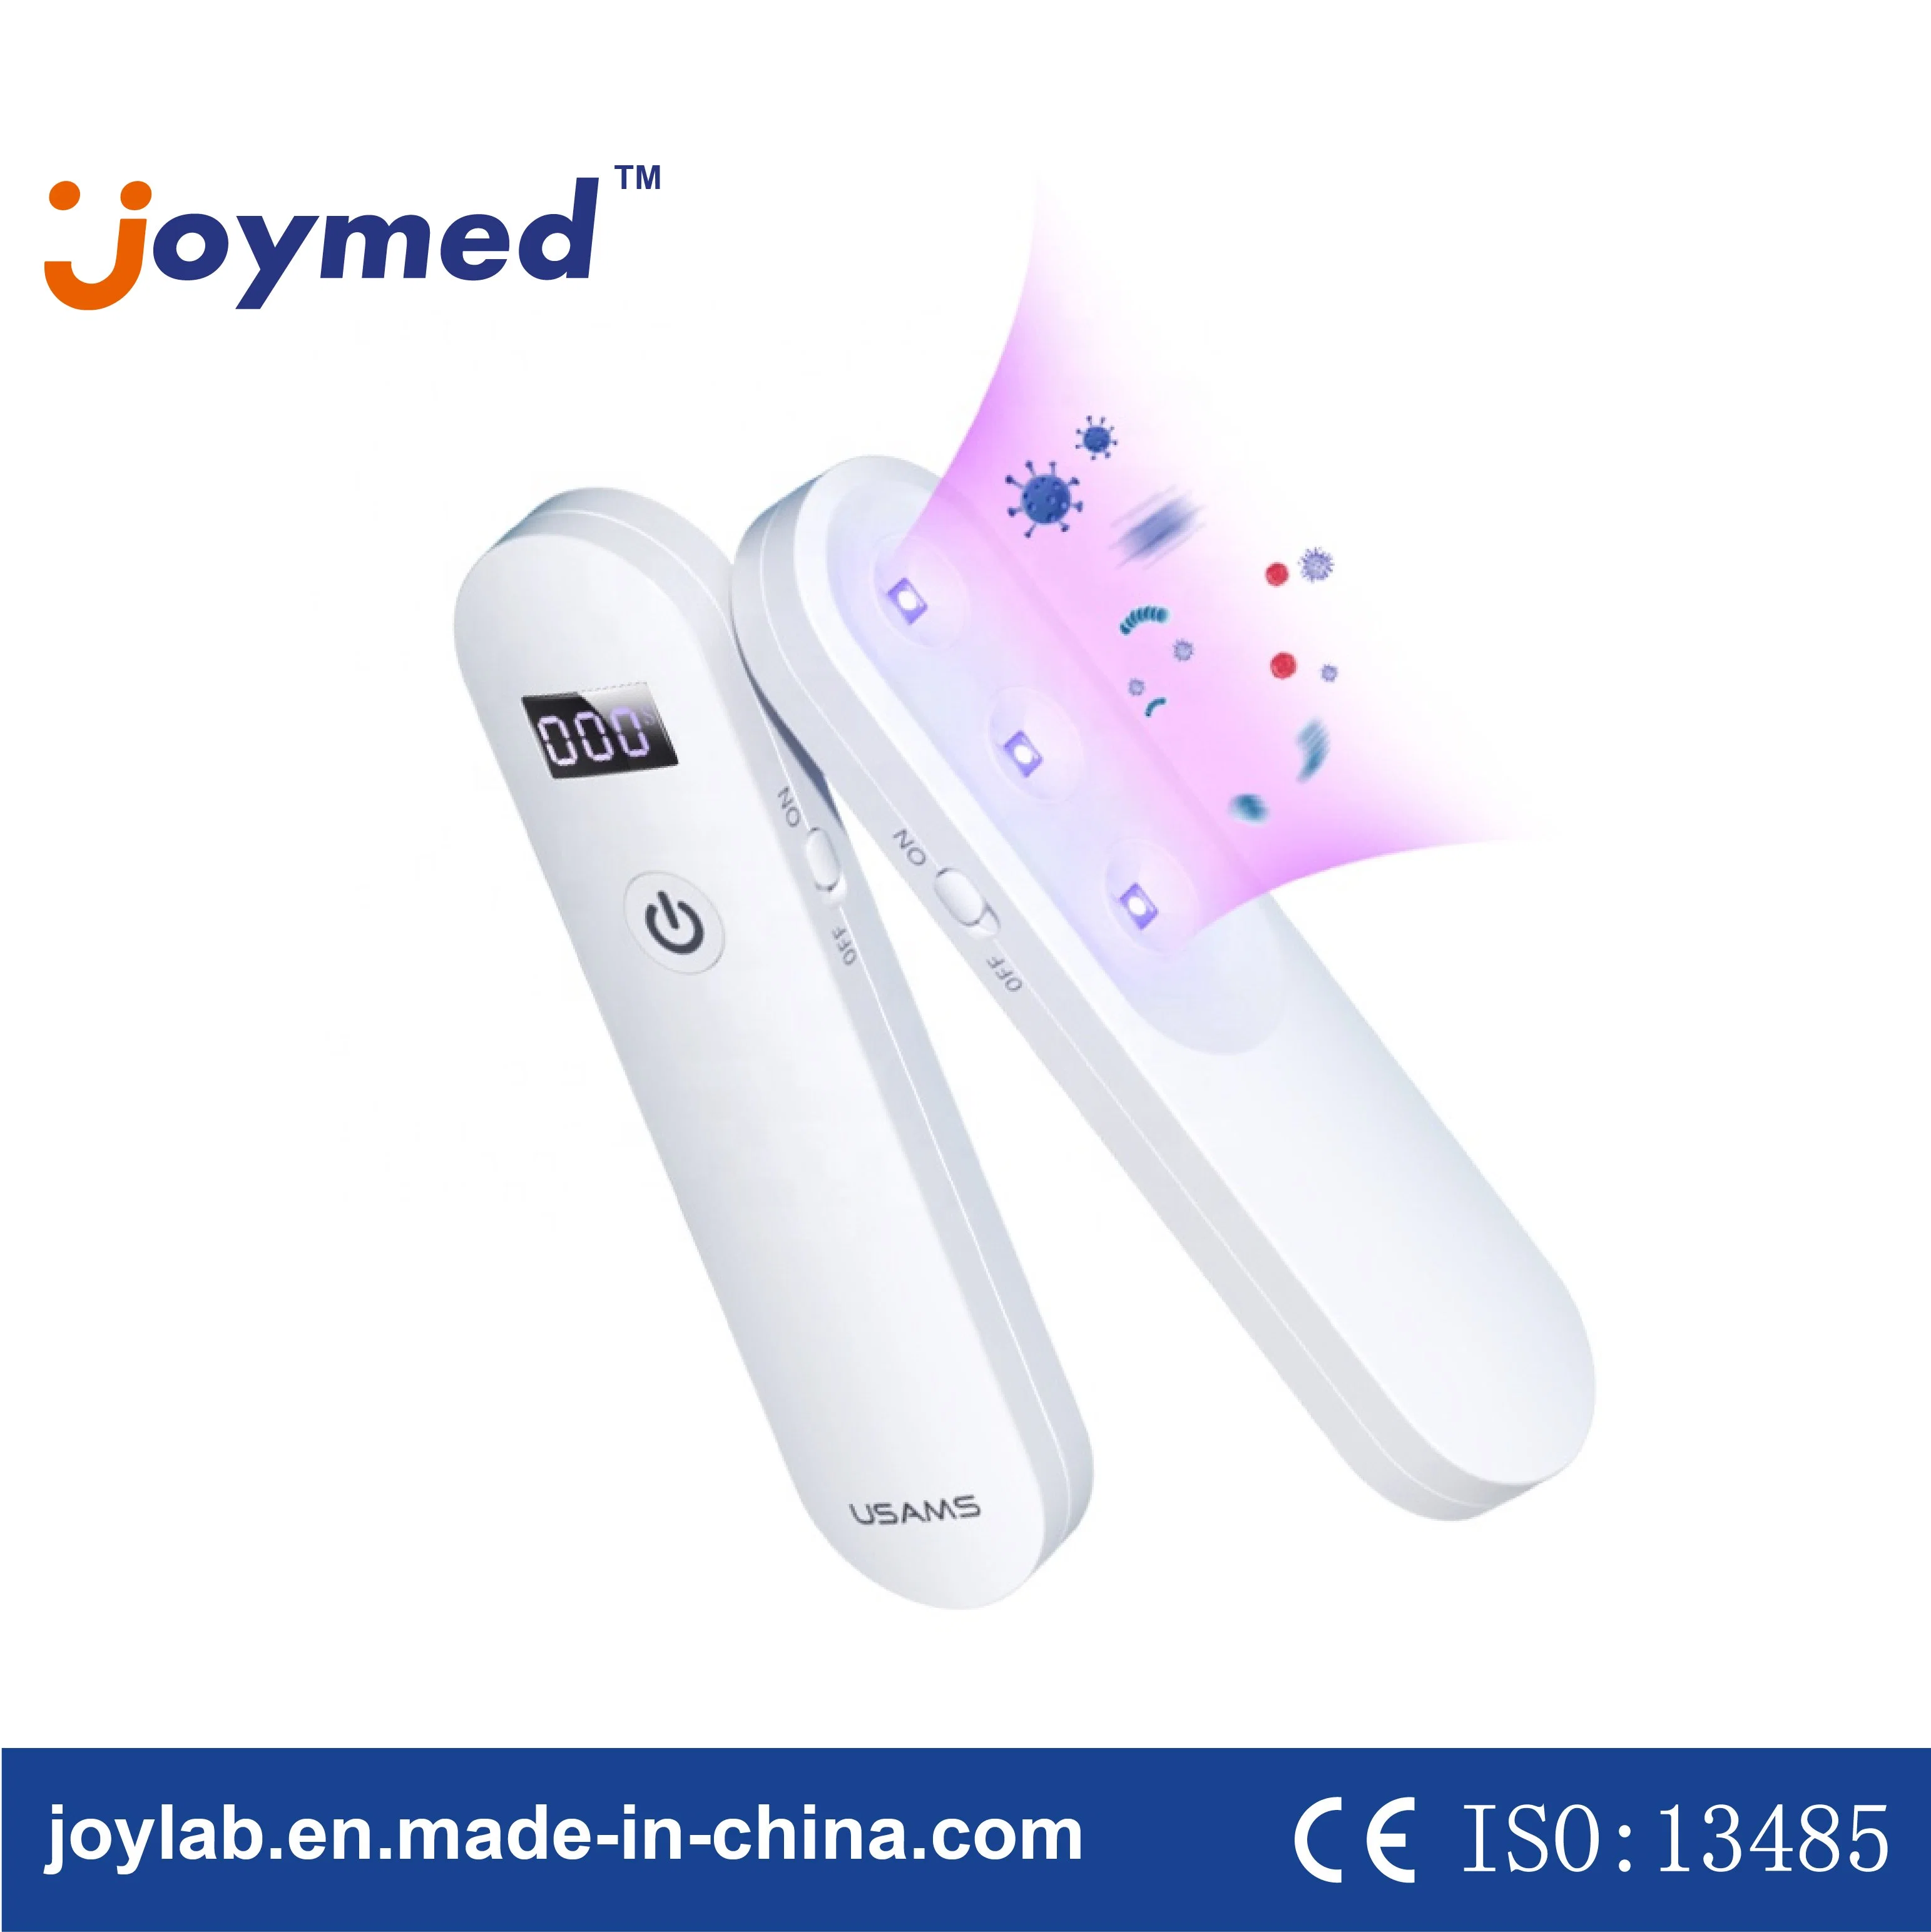 Heißer Verkauf Digital UV-Licht Sterilisator Portable UVC Desinfektionslampe Mit 254nm LED-Licht